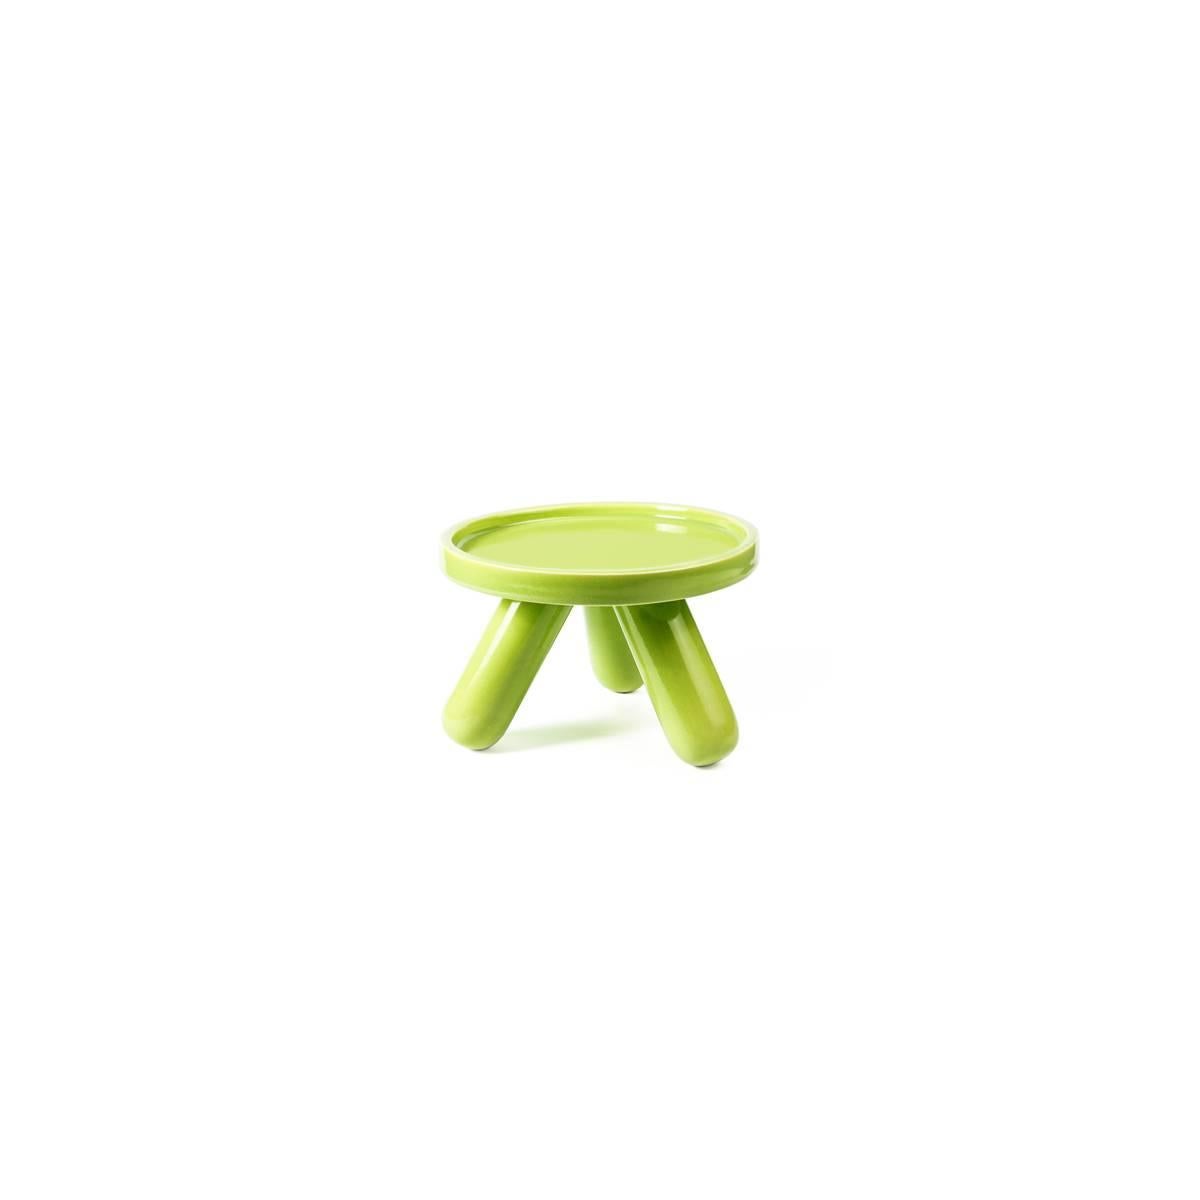 Gambino ist ein von Aldo Cibic entworfener keramischer Setzkasten, der in zwei Farbvarianten (rot und grün) erhältlich ist. Das Produkt ist Teil der Table Joy Collection: eine fröhliche, farbenfrohe und leicht radikale Geschirrfamilie, die nach